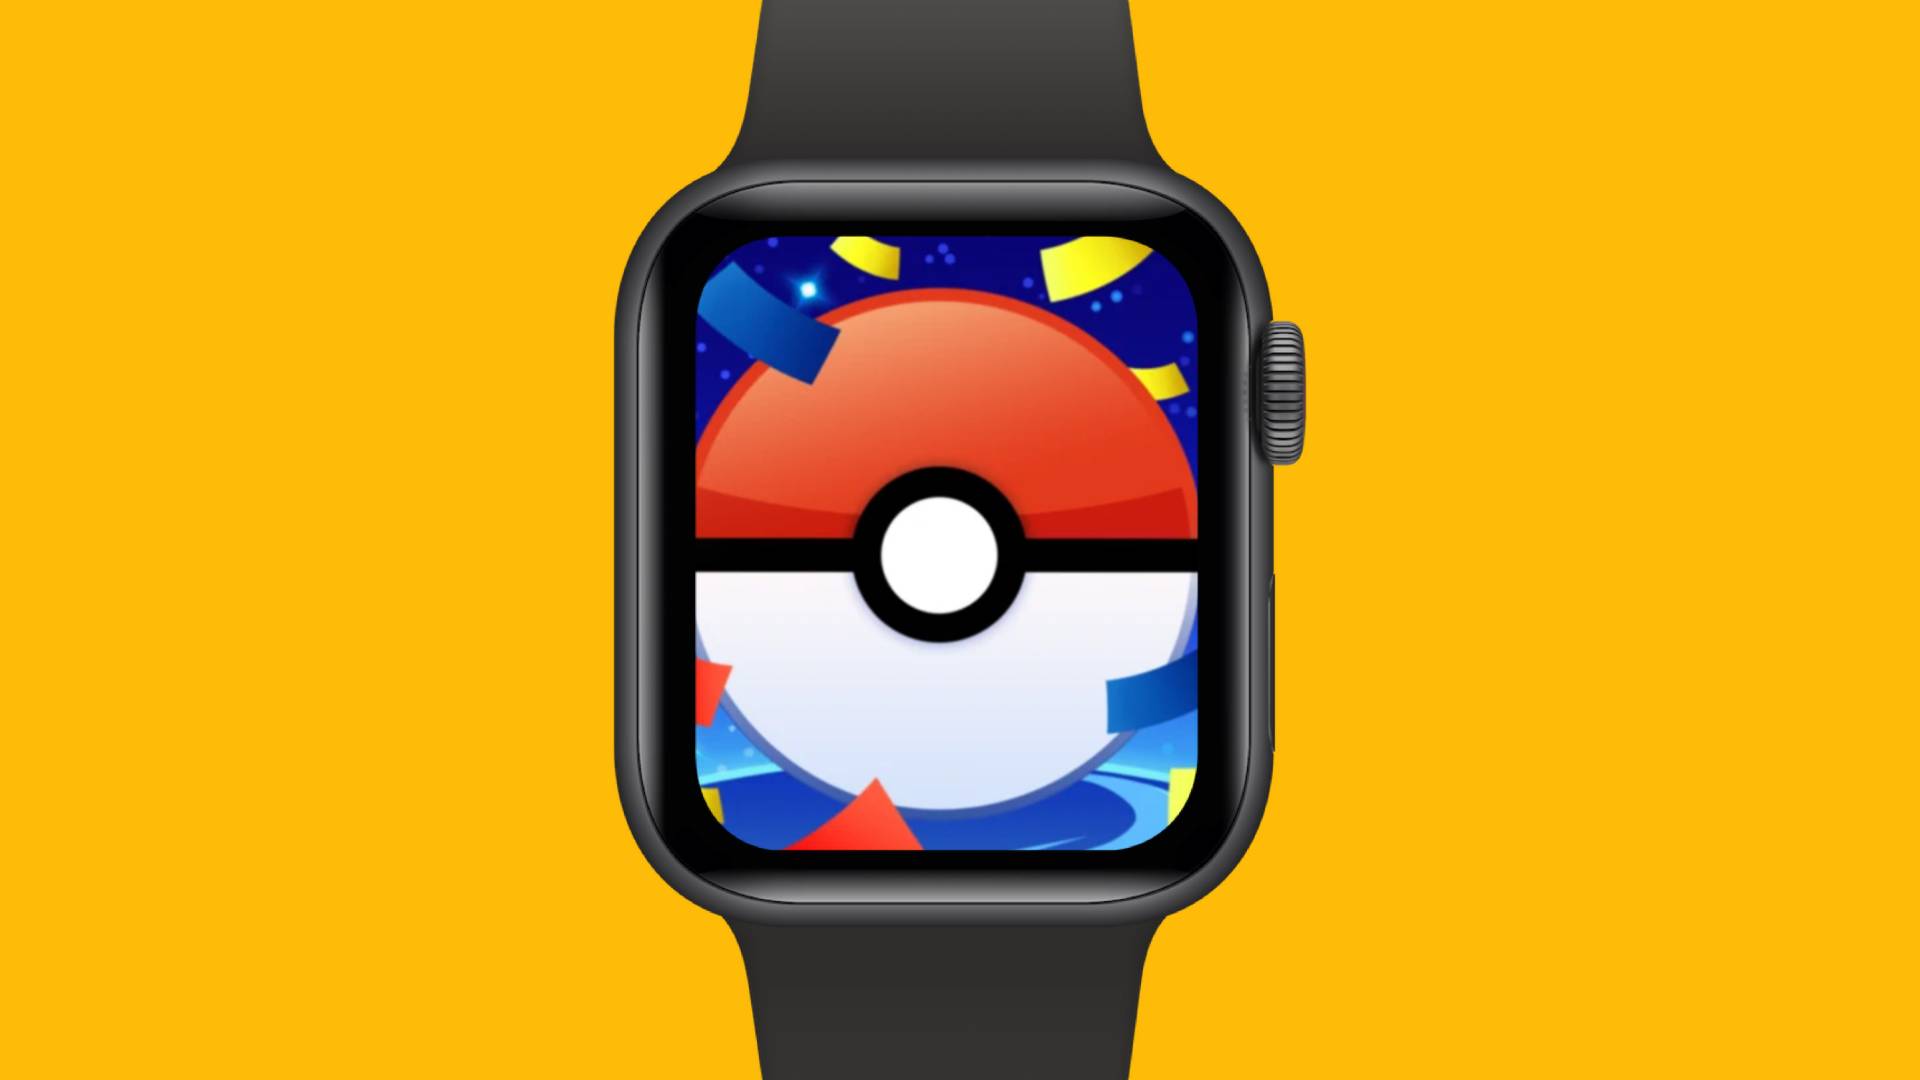 Pokémon Go Apple Watch Pocket Tactics